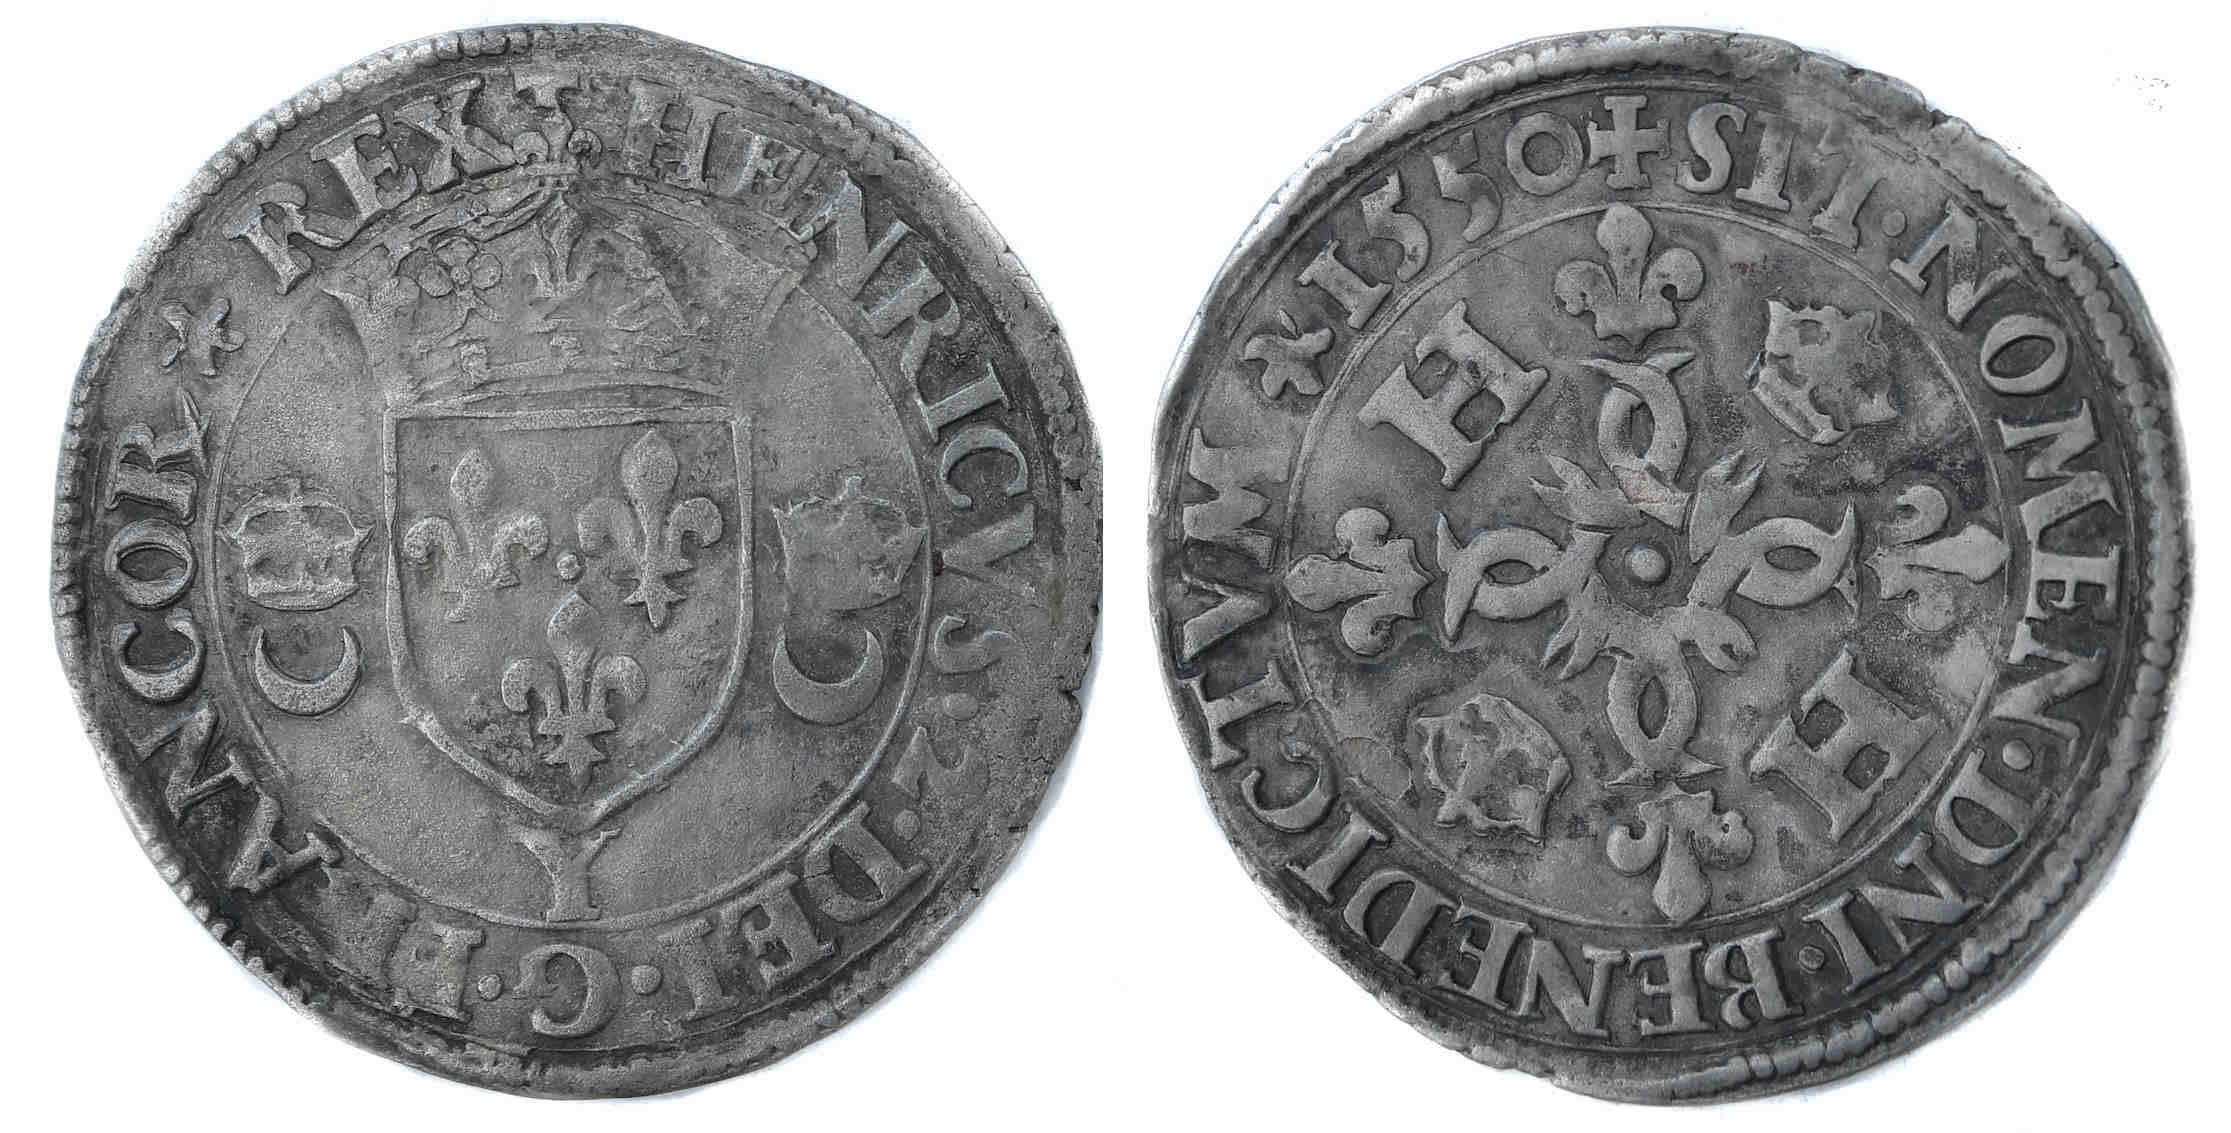 Monnaies royales francaises HENRI II DOUZAIN CROISSANTS 1550 BOURGES